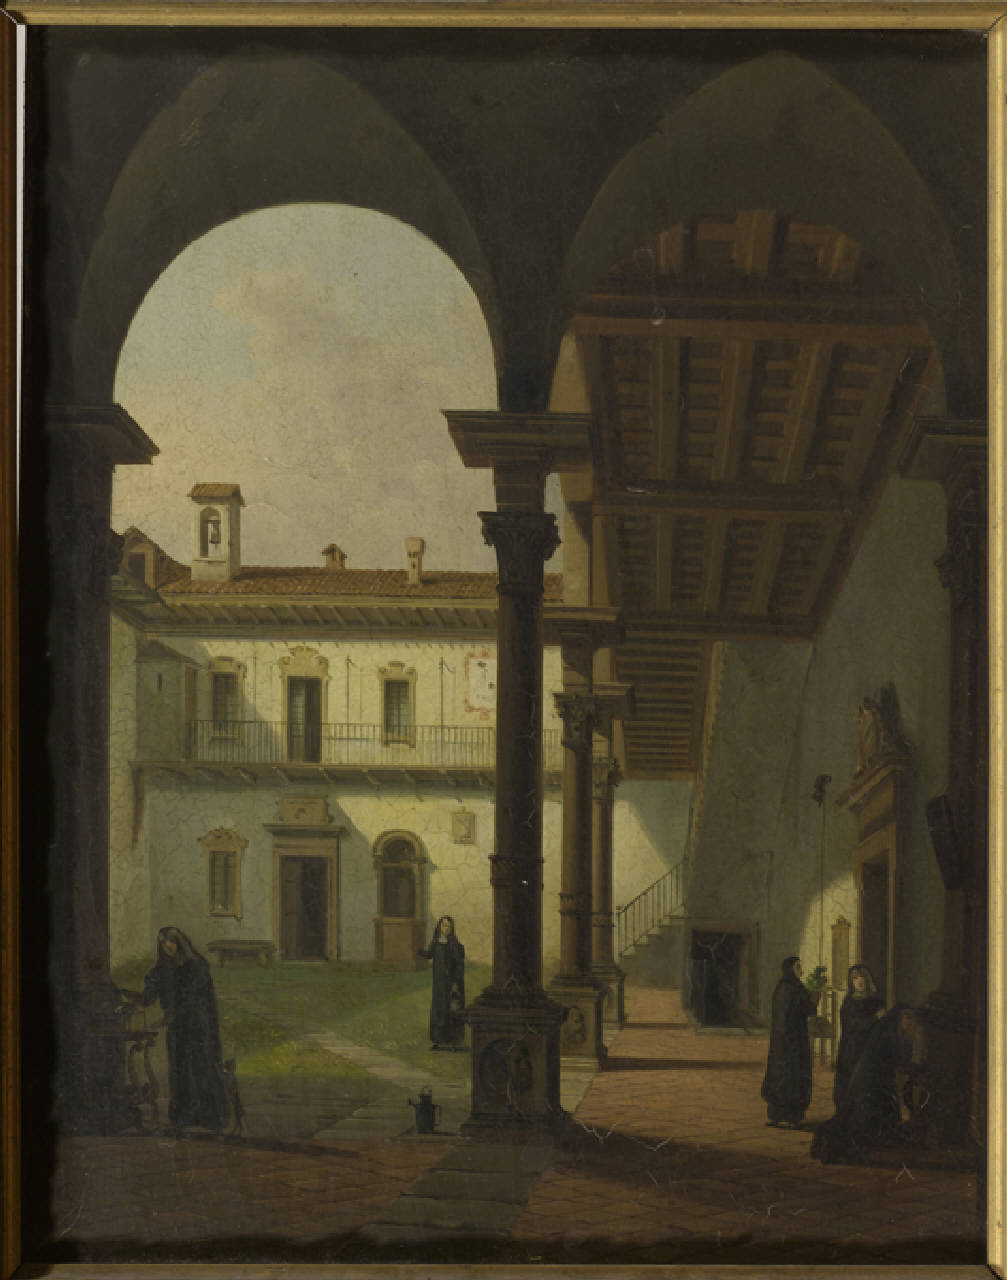 Cortile del Monastero Maggiore, Cortile di monastero milanese intorno al 1850, forse del Monastero Maggiore o del monastero di S.Sepolcro (dipinto) di Anonimo (sec. XIX)